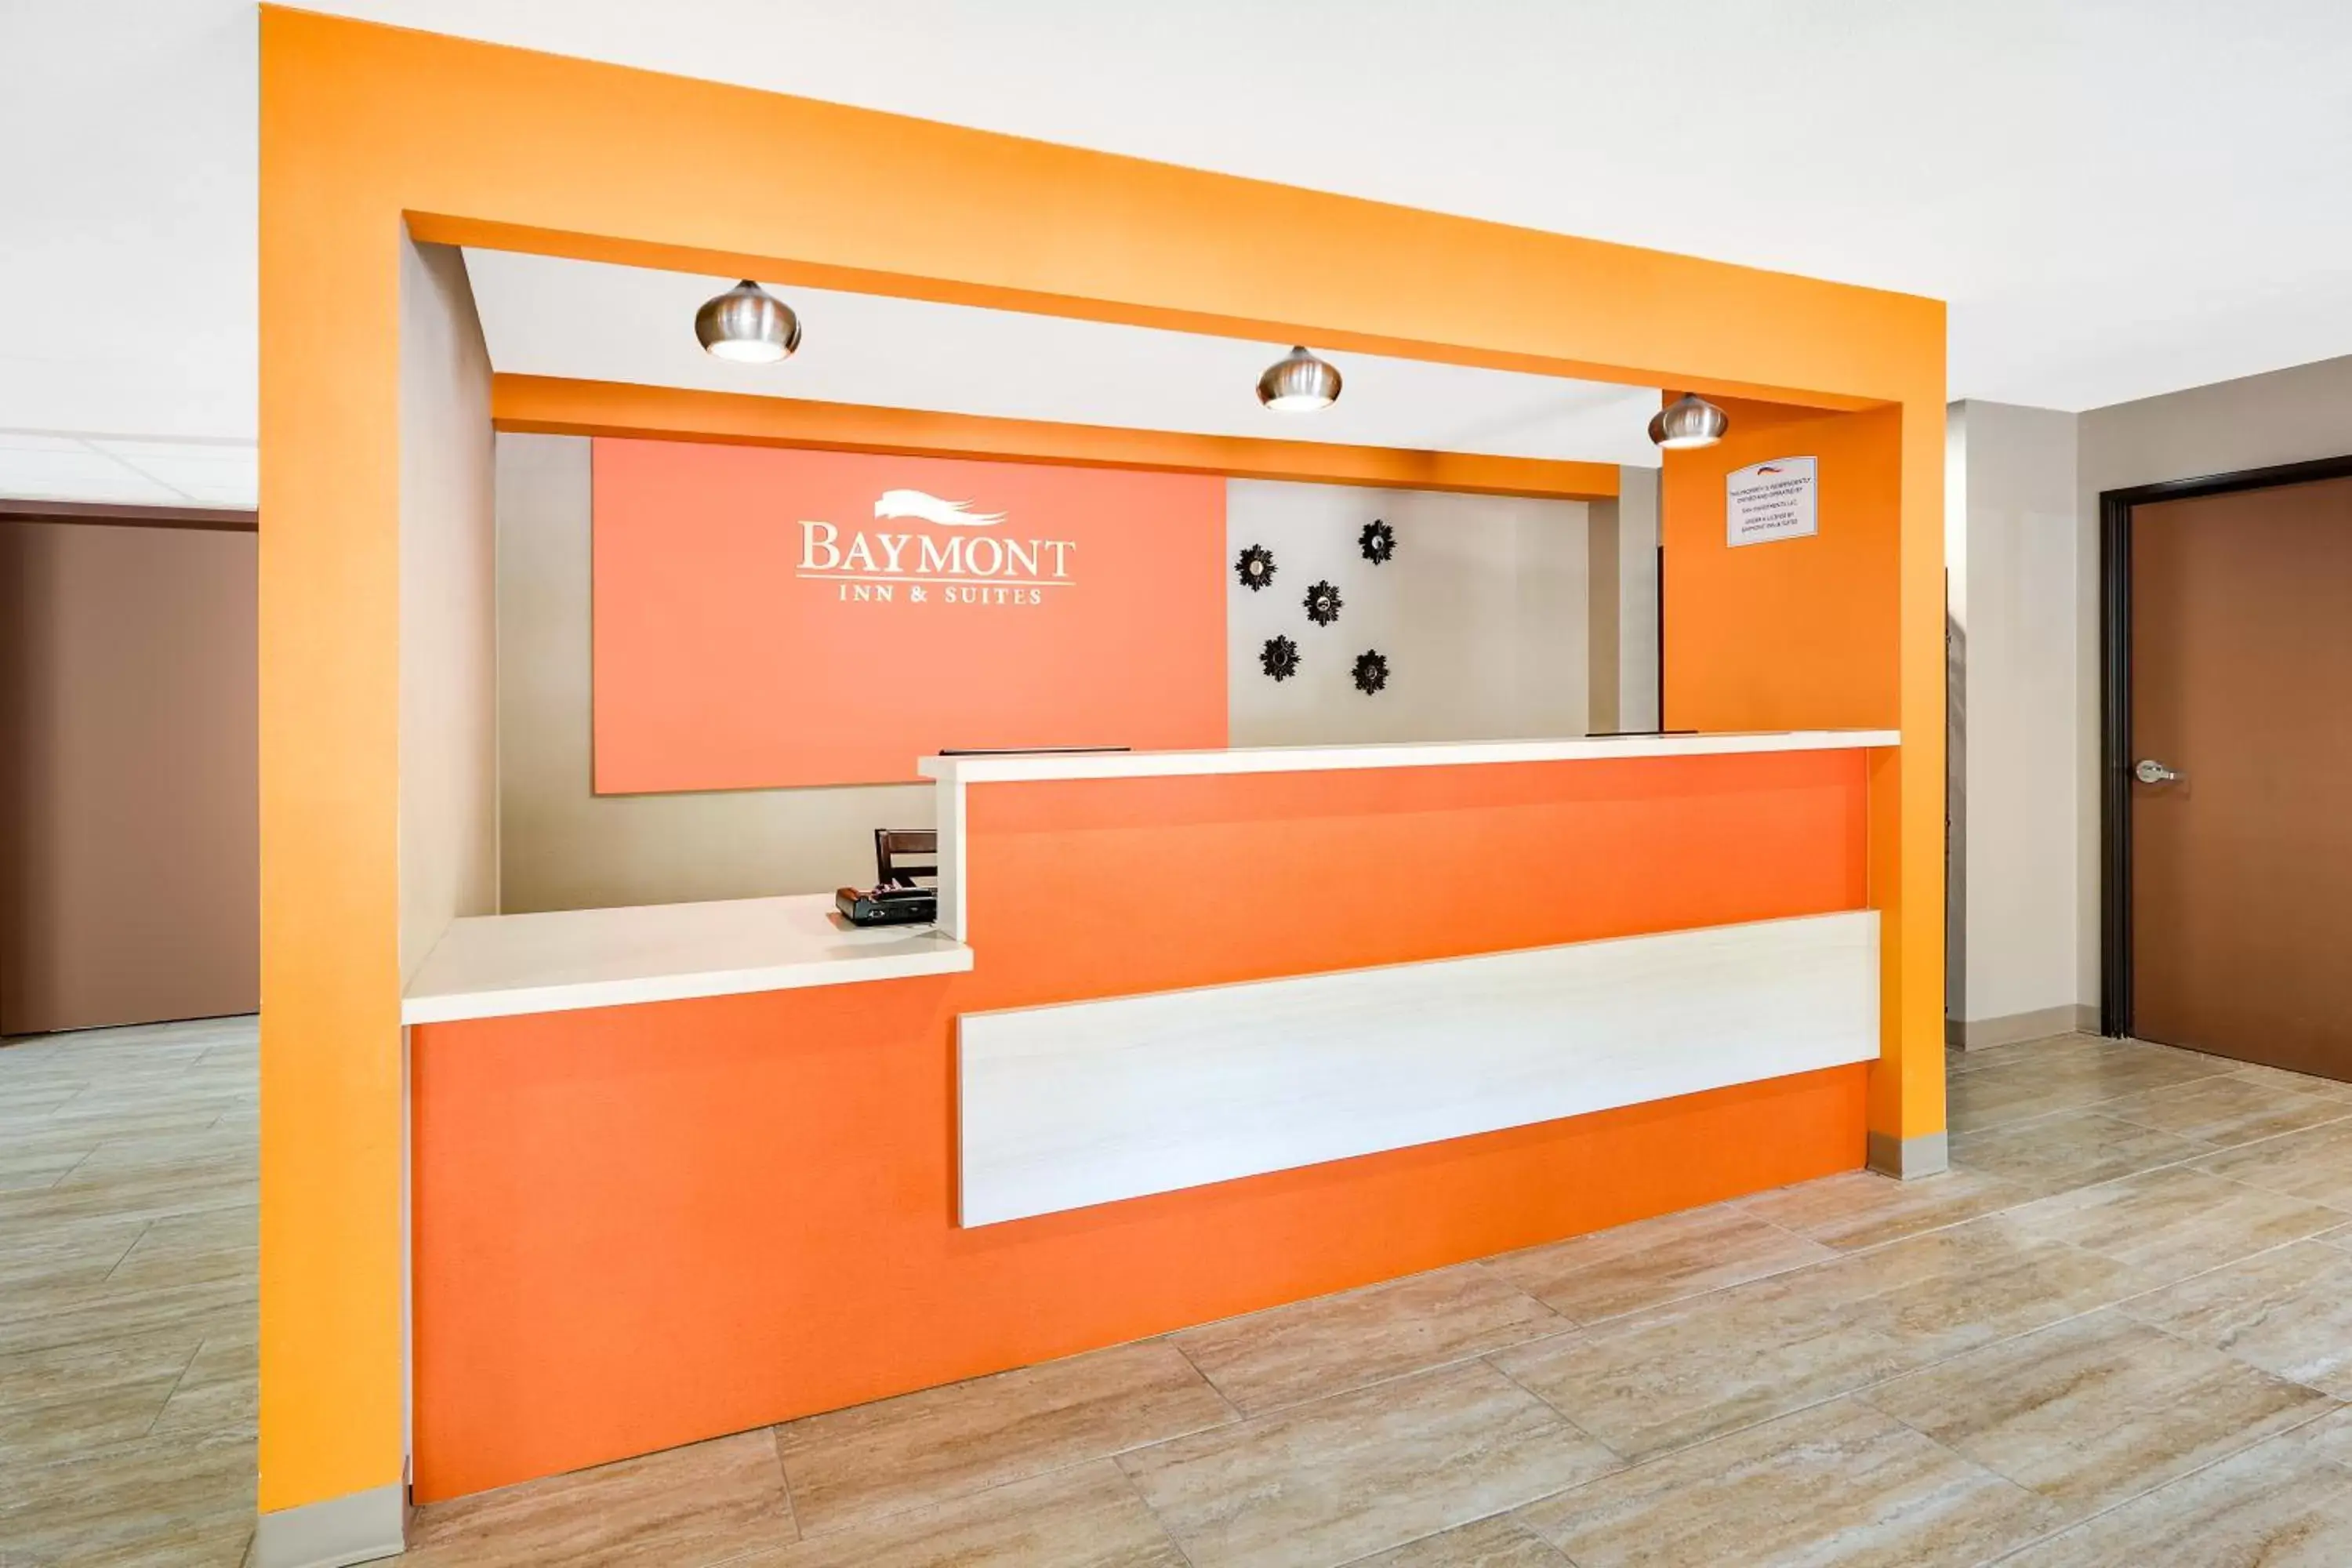 Lobby or reception, Lobby/Reception in Baymont by Wyndham Plano